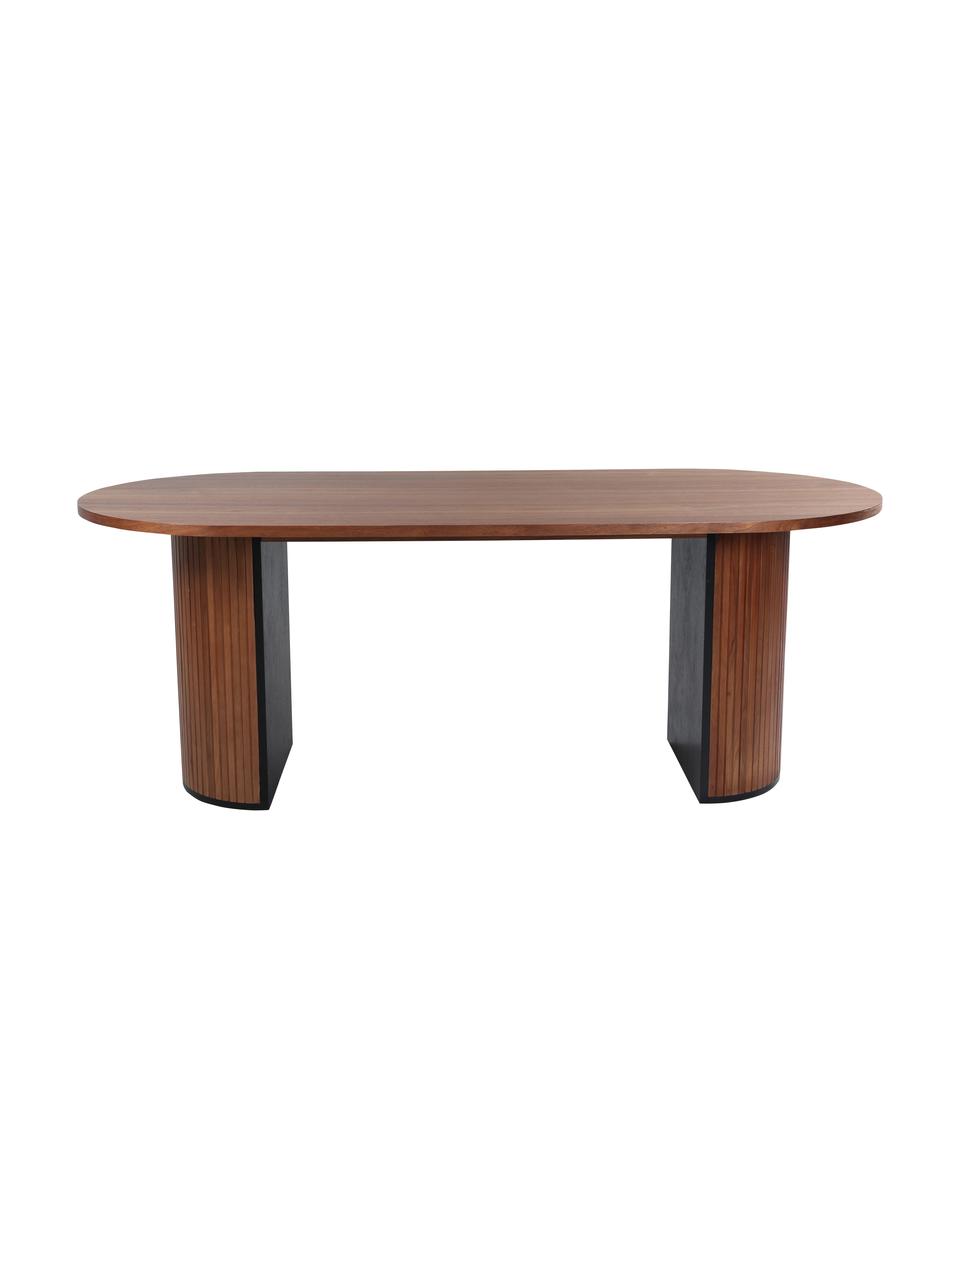 Tavolo ovale color noce Bianca, 200x90 cm, Struttura: legno di tromba, vernicia, Color noce, nero, Larg. 200 x Prof. 90 cm